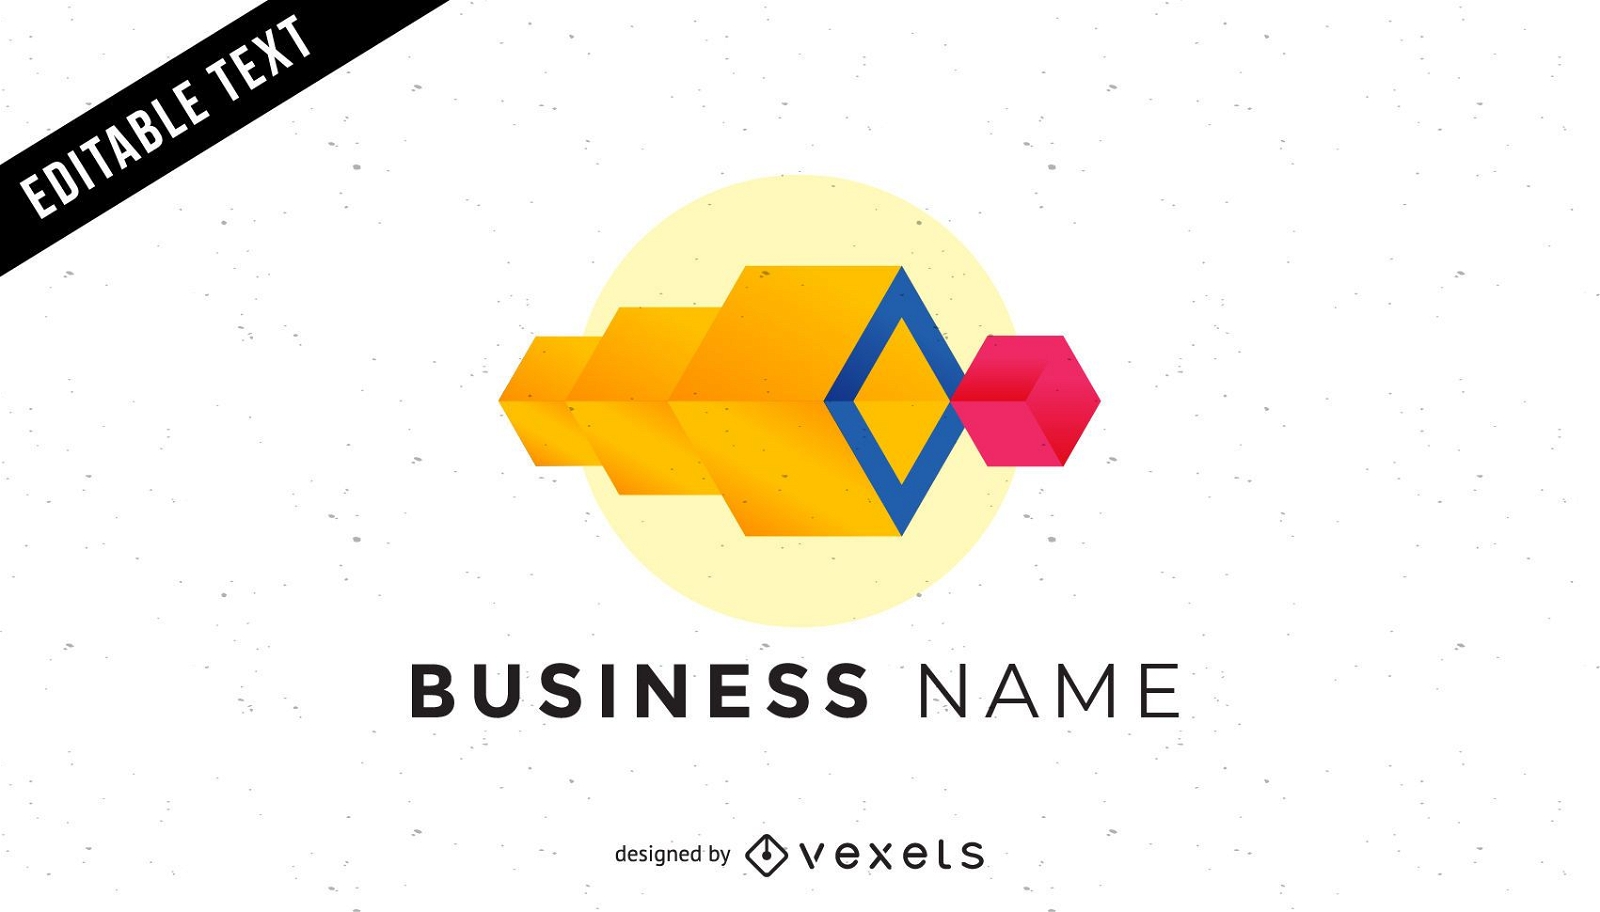 Logotipo da empresa Cubes